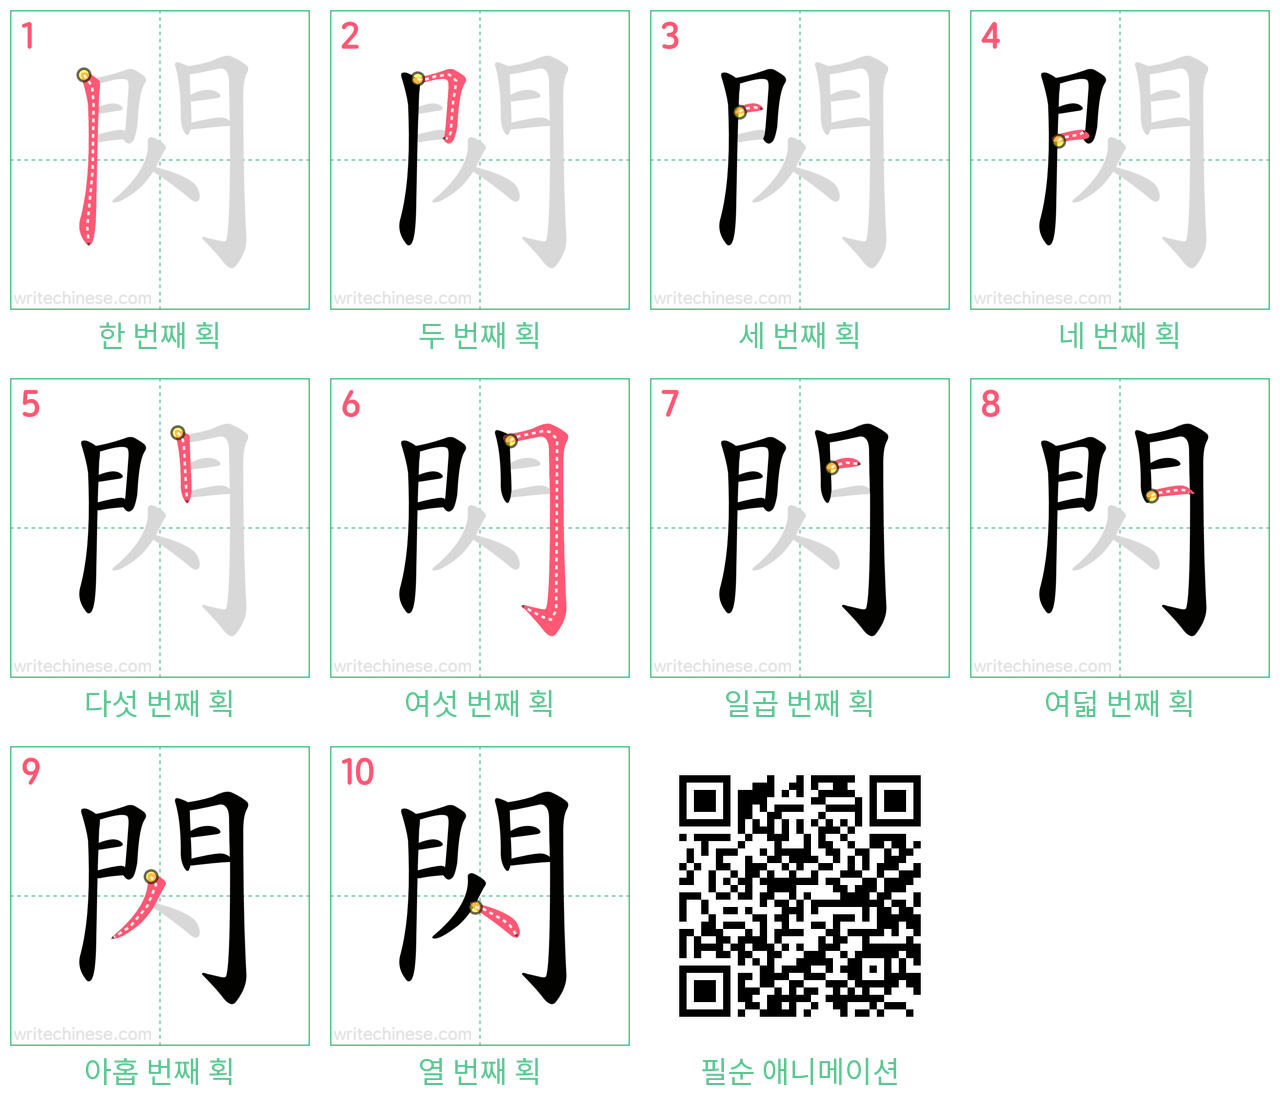 閃 step-by-step stroke order diagrams